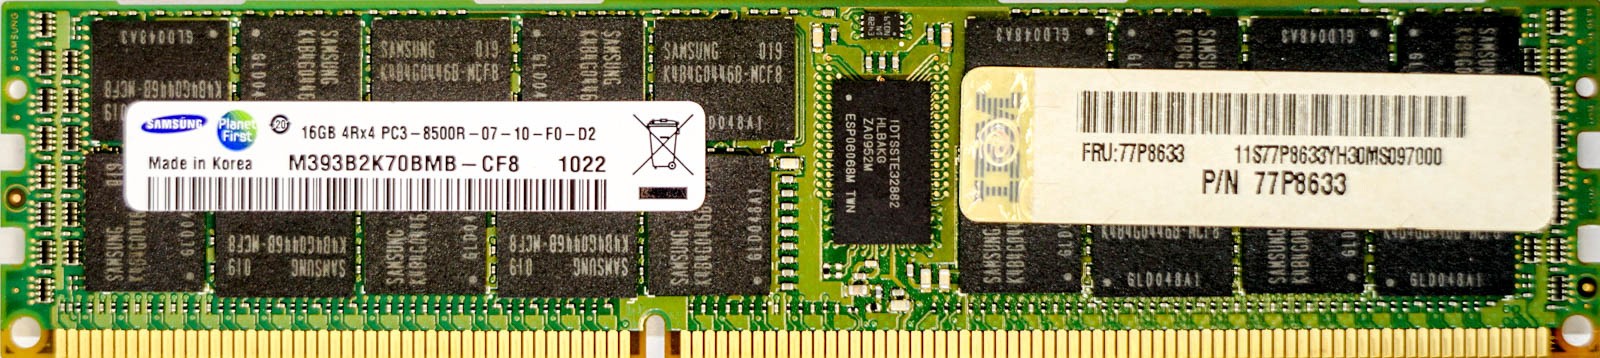 IBM (77P8633) - 16GB PC3-8500R (DDR3-1066Mhz, 4RX4)